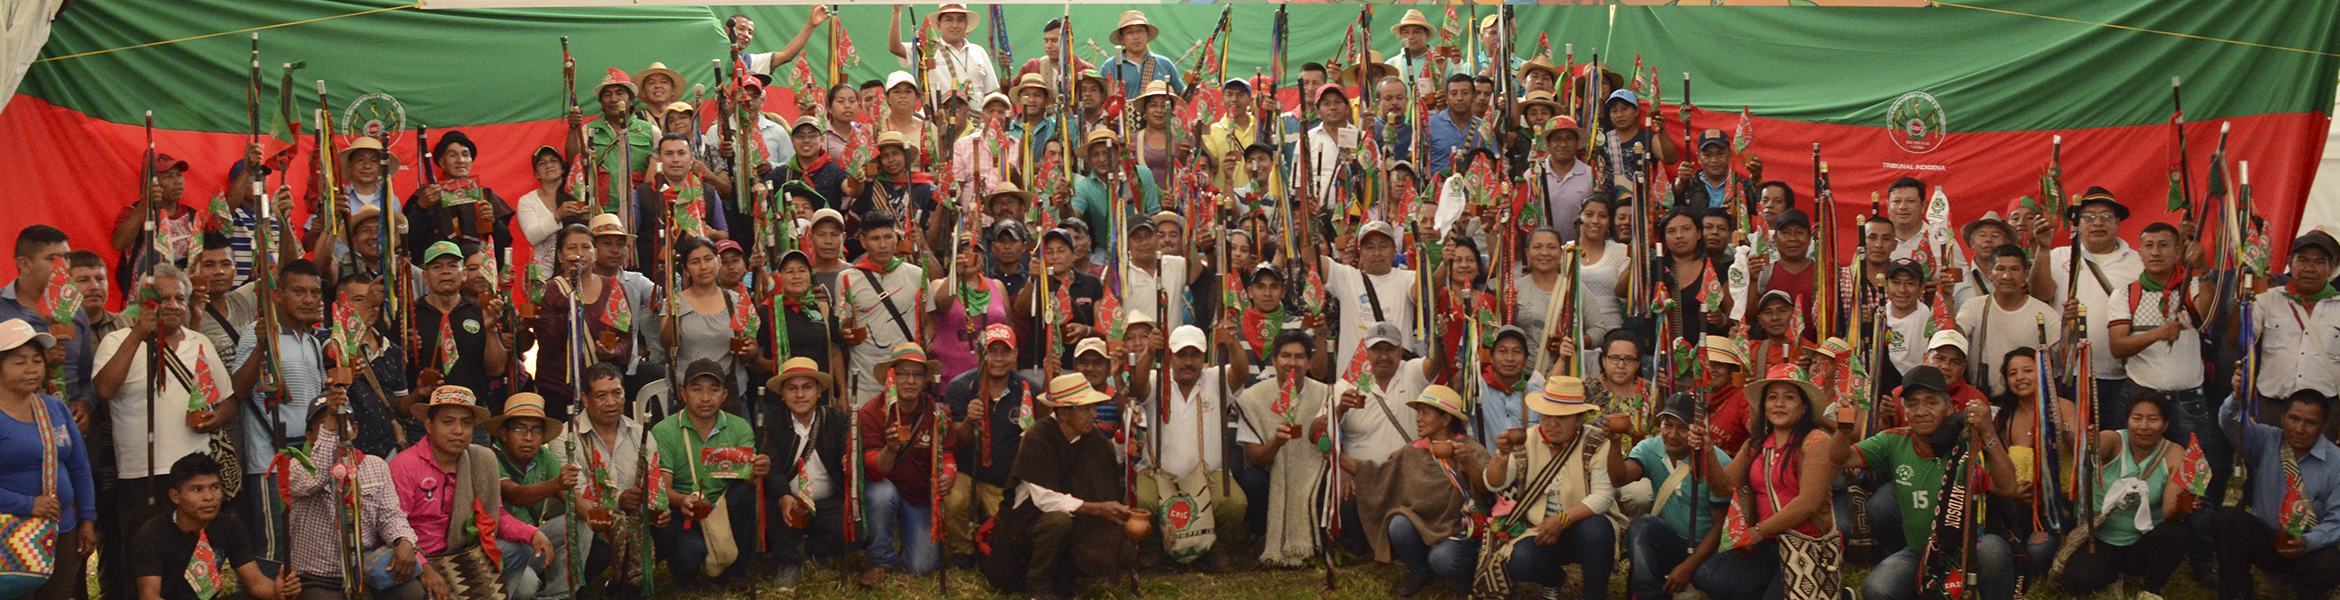 popoli indigeni e sciopero nazionale